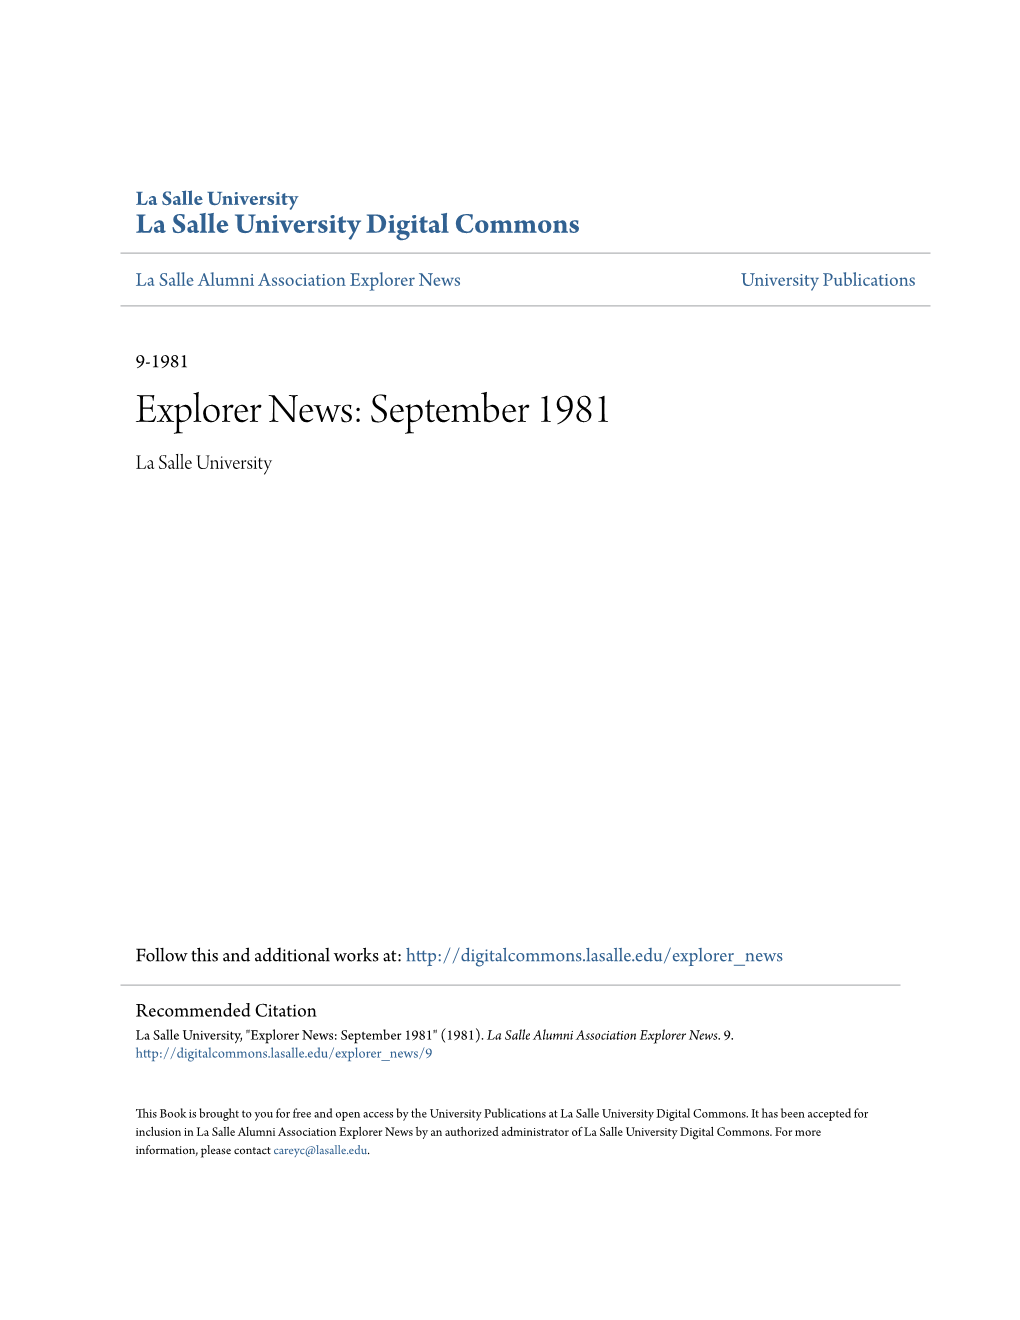 Explorer News: September 1981 La Salle University